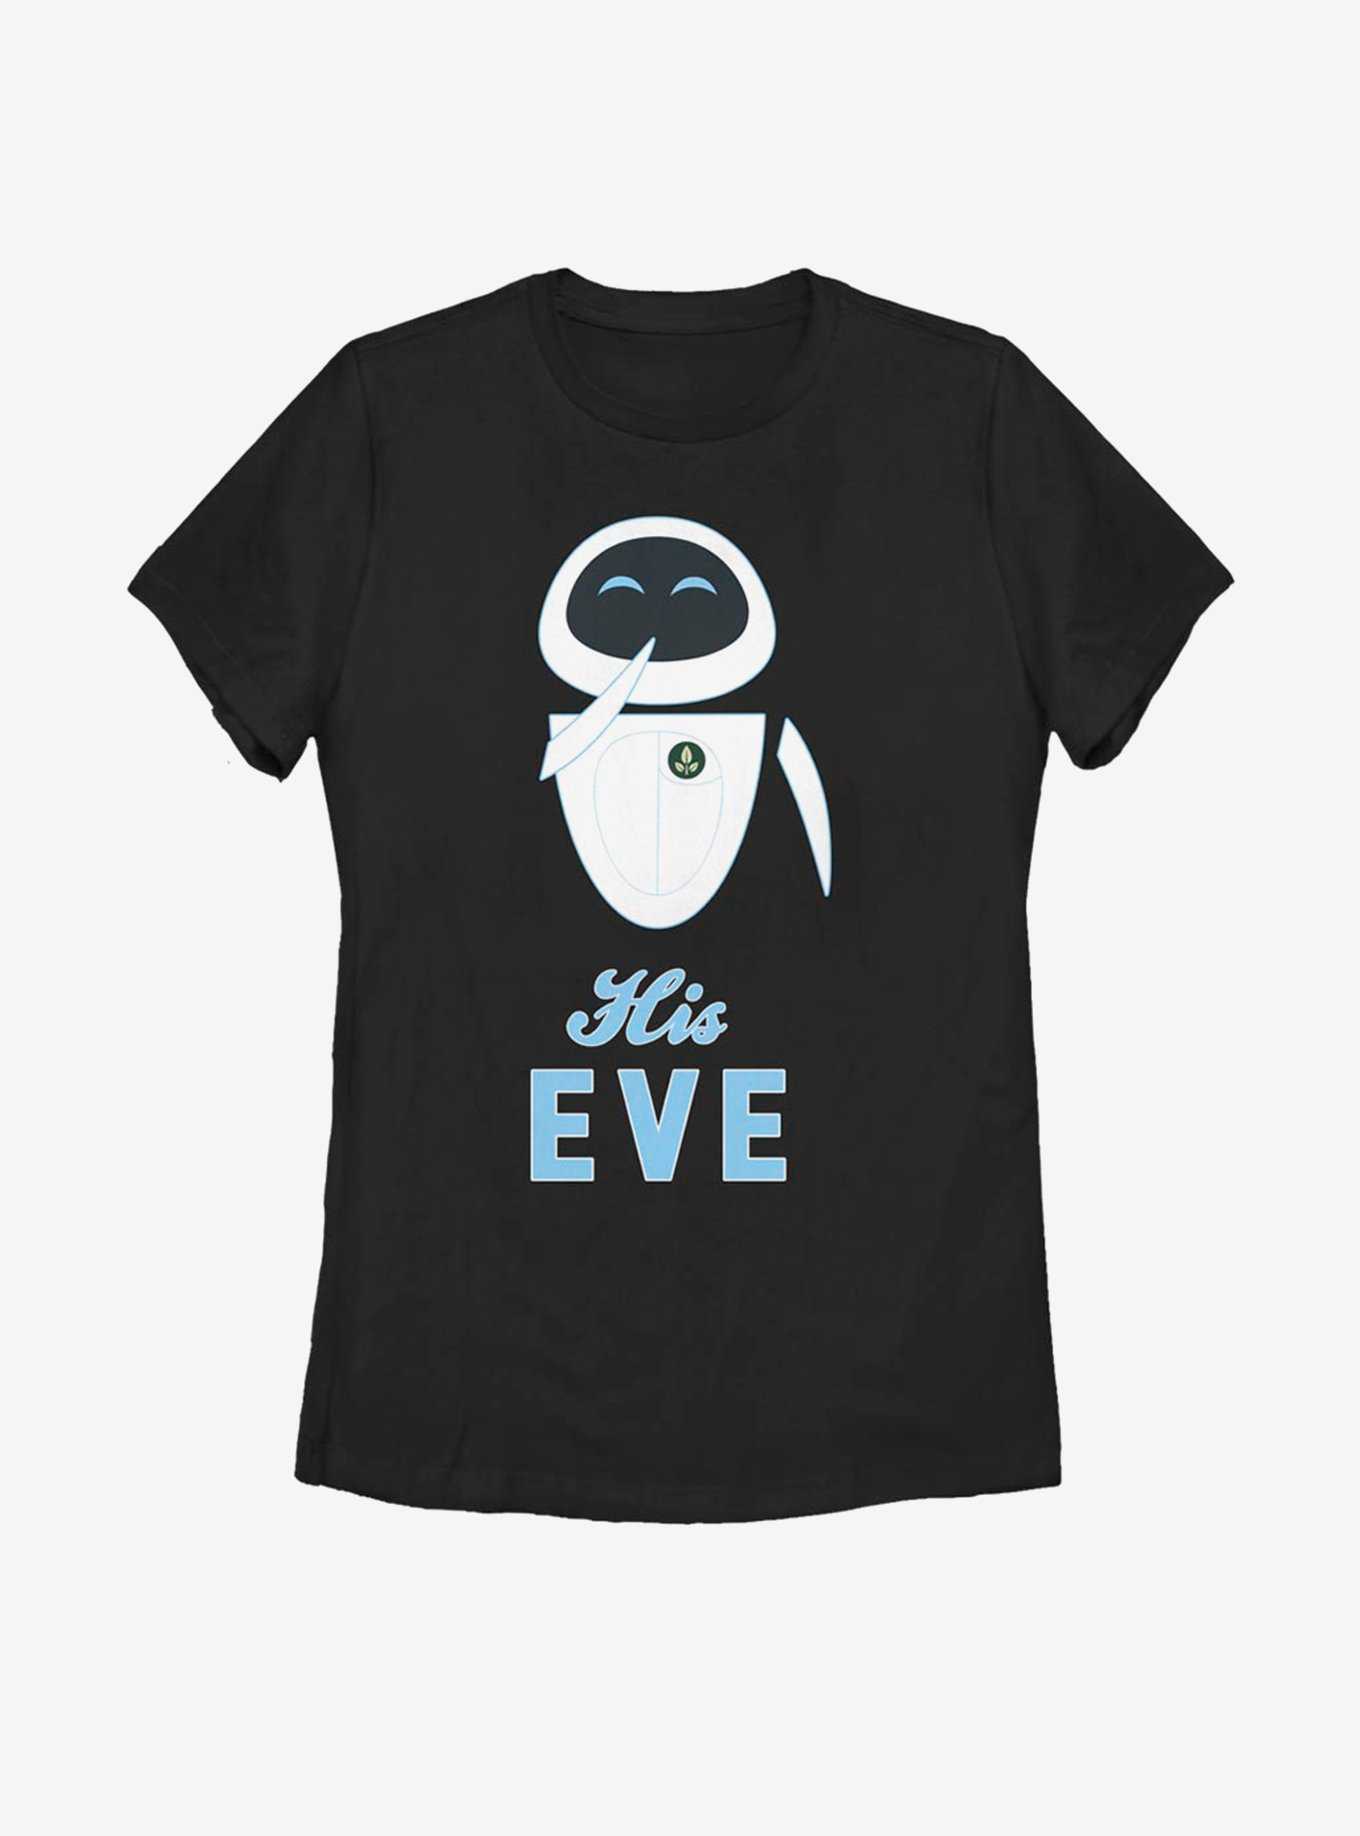 Disney Pixar WALL-E His Eve Womens T-Shirt, , hi-res